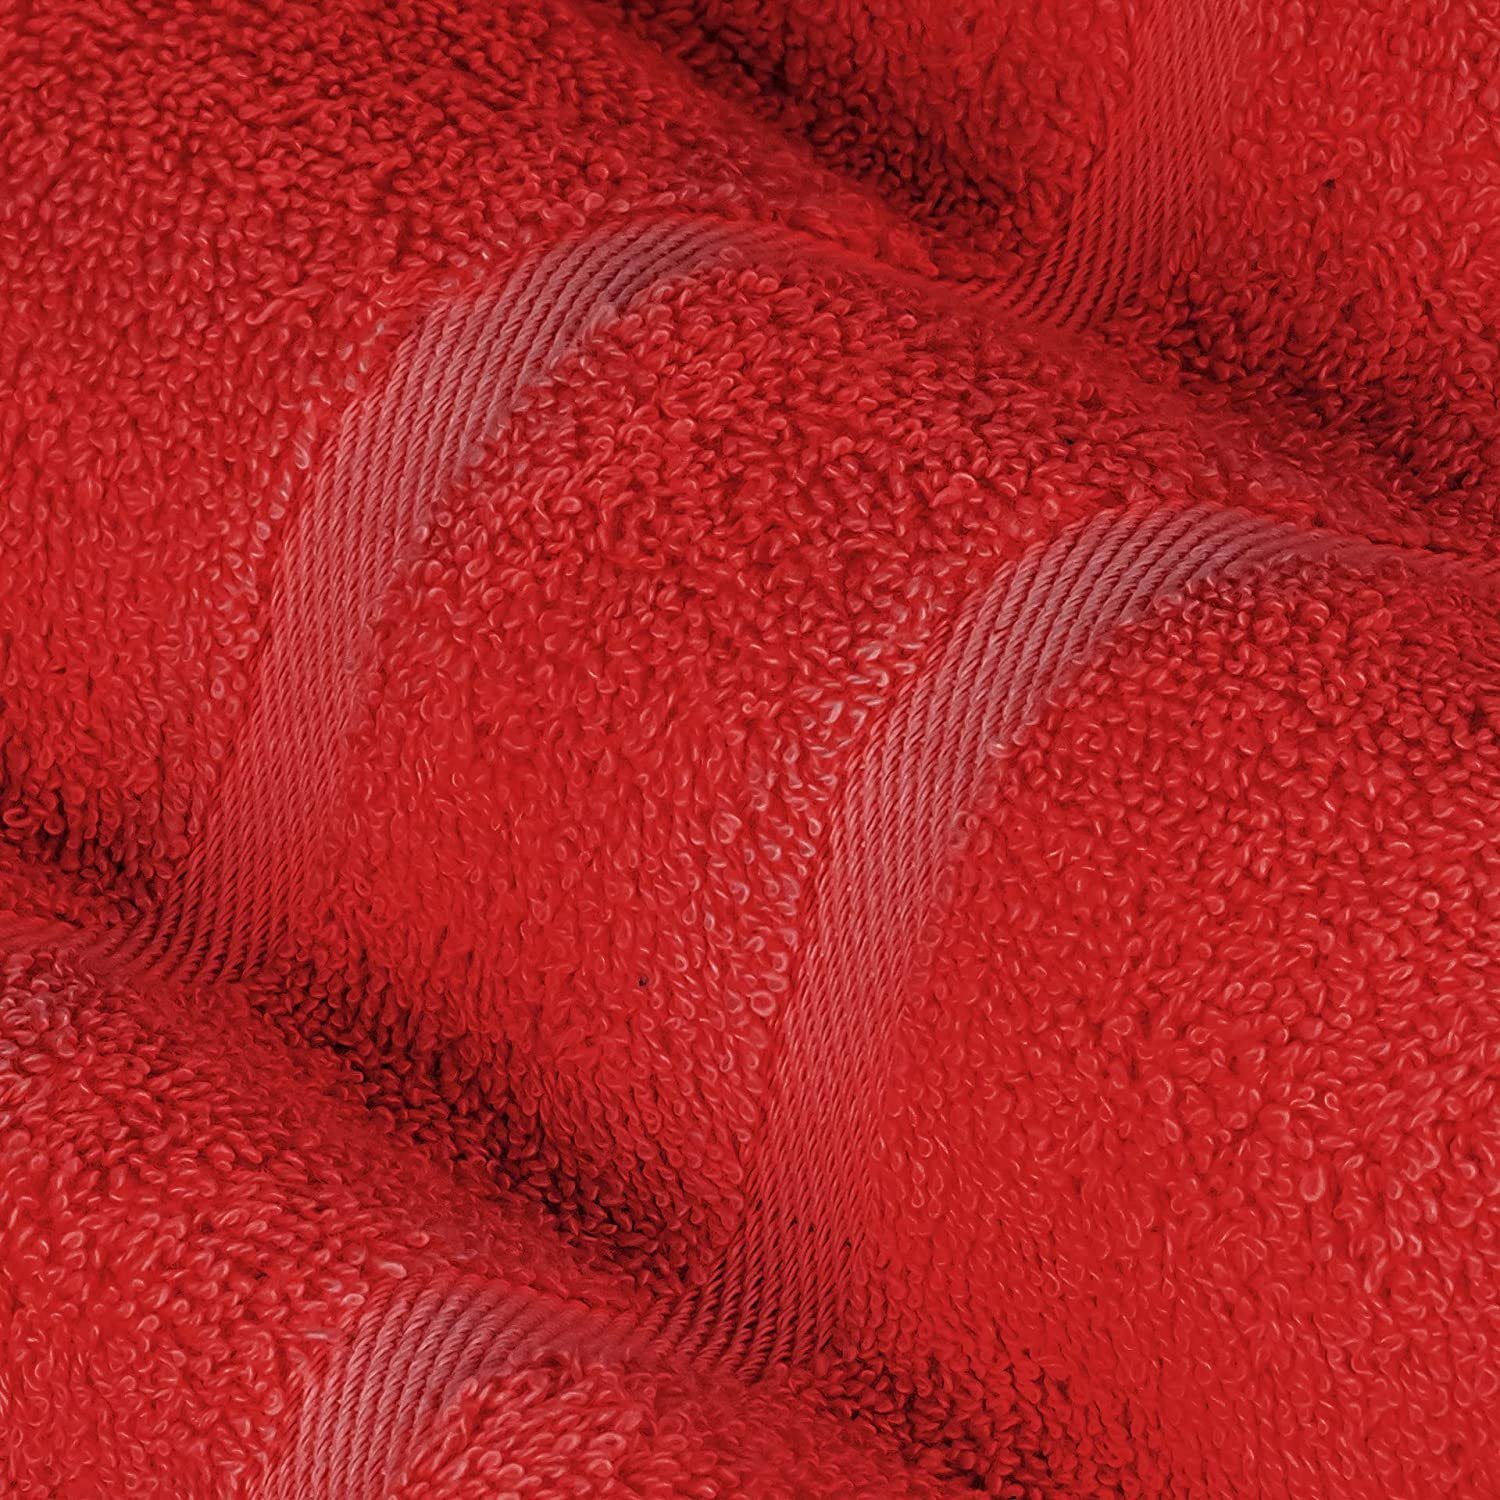 StickandShine Handtuch Duschtücher 4x Handtücher Gästehandtuch Baumwolle, Rot 4x Set 100% SET 2x (Spar-SET)